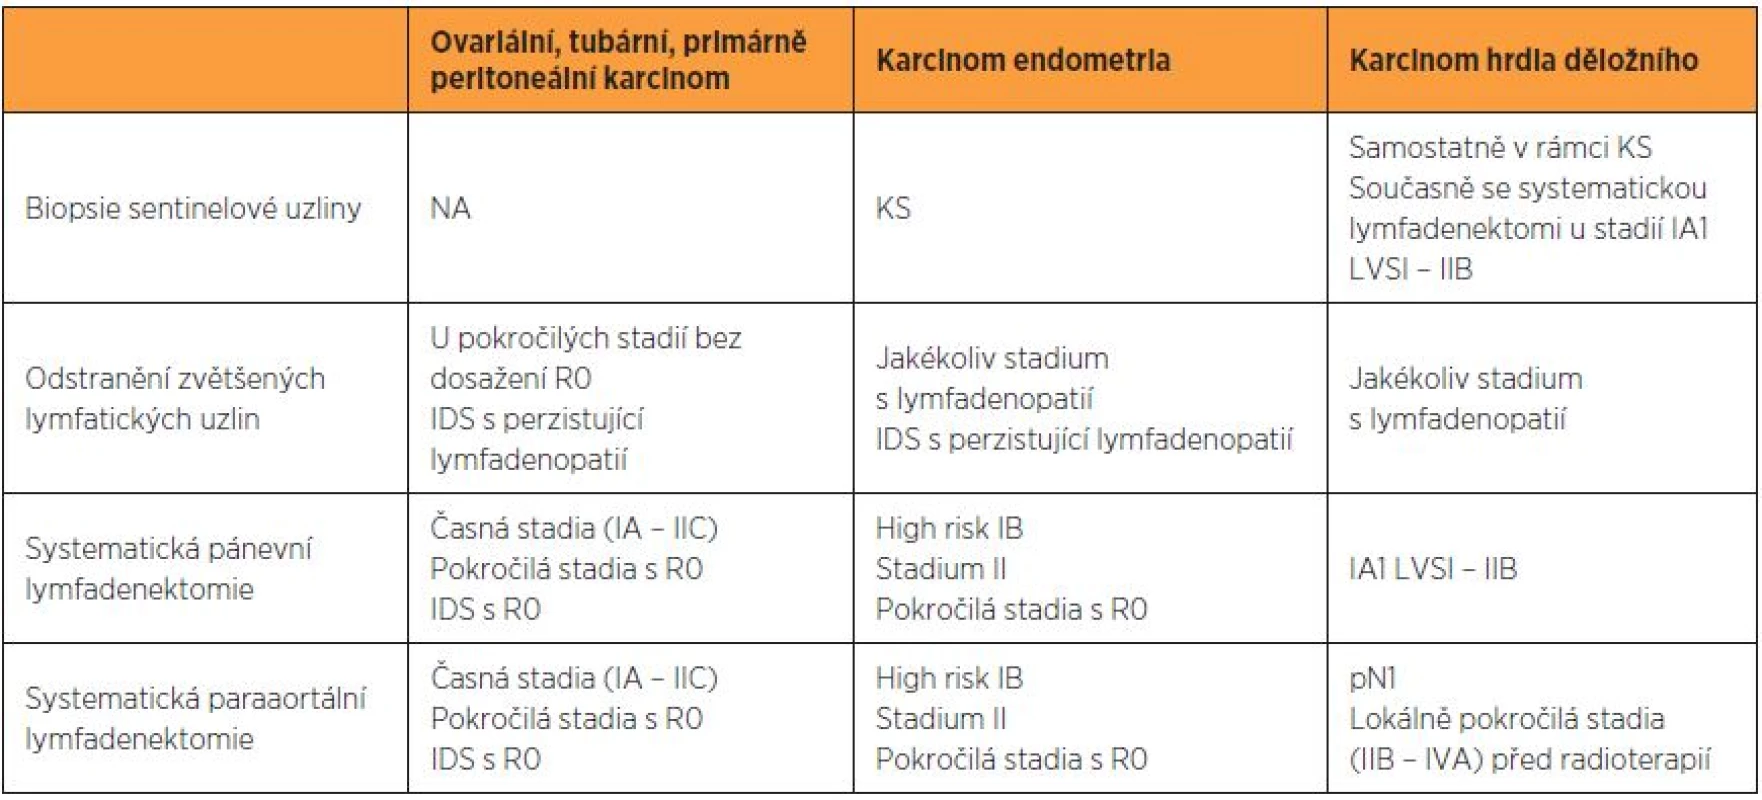 Hlavní indikace pro pánevní a paraaortální lymfadenektomii podle vnitřních doporučených postupů pracoviště autorů